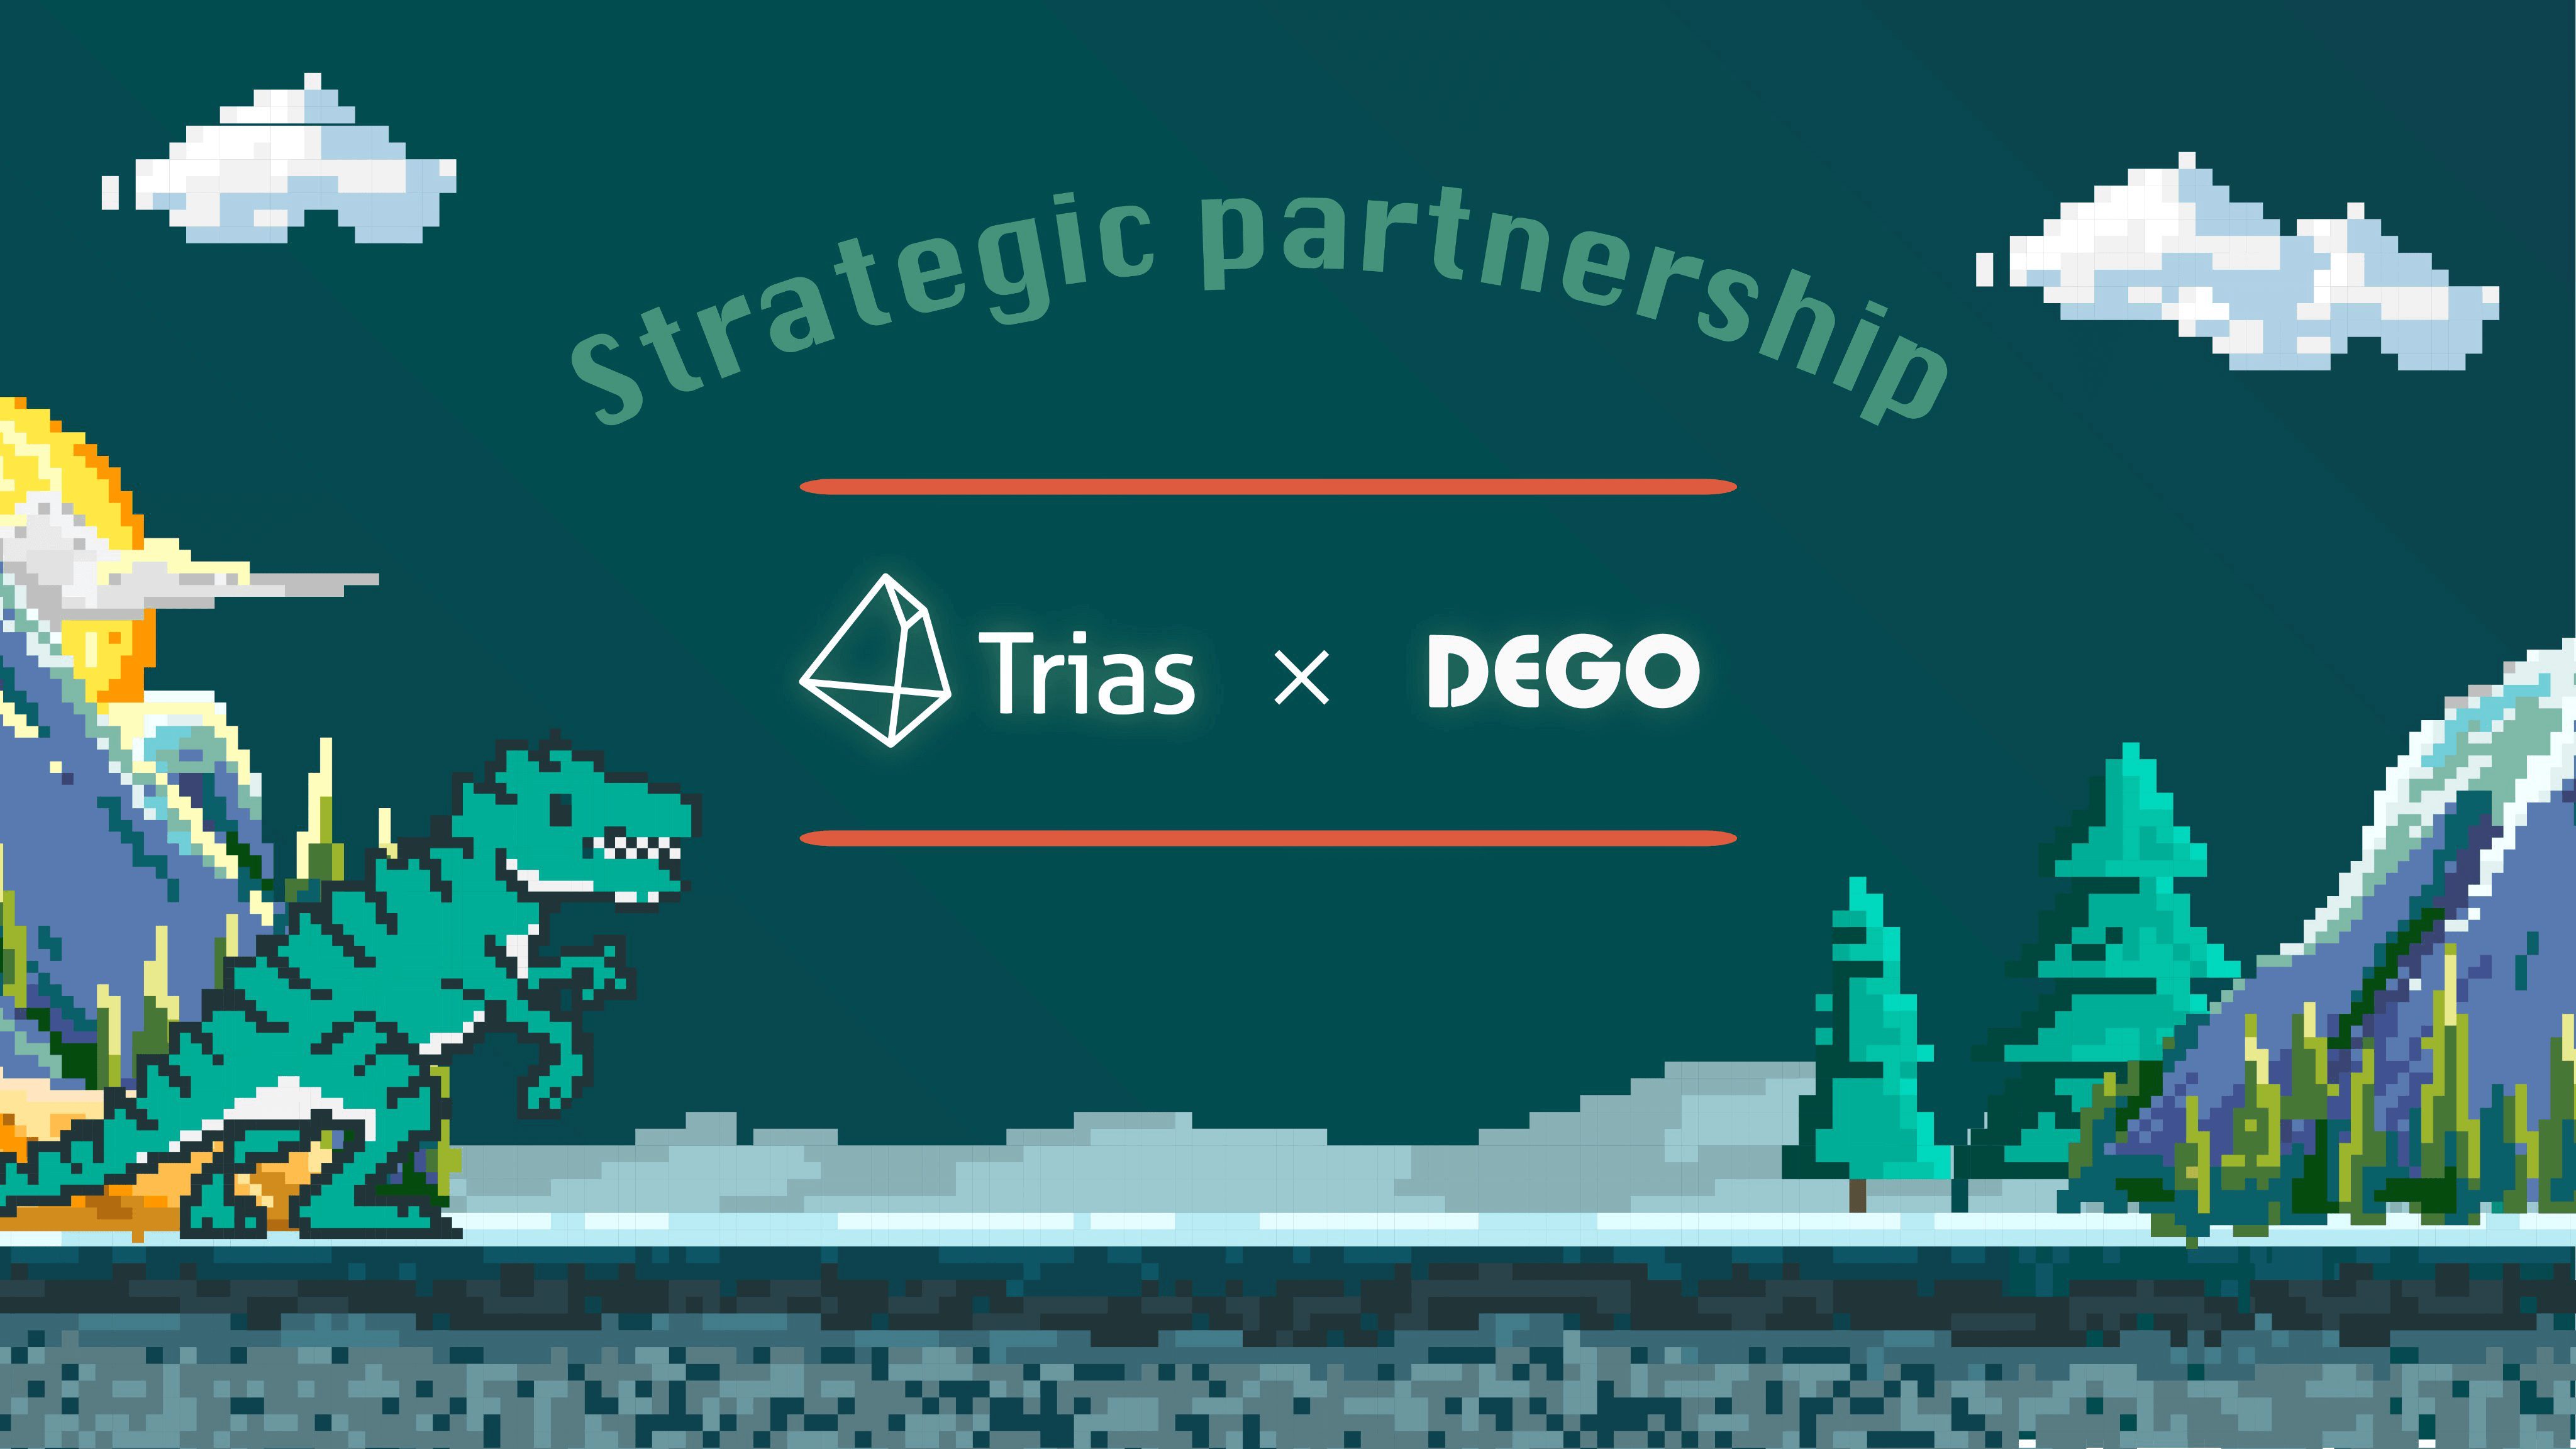 Trias x DEGO Strategic Partnership